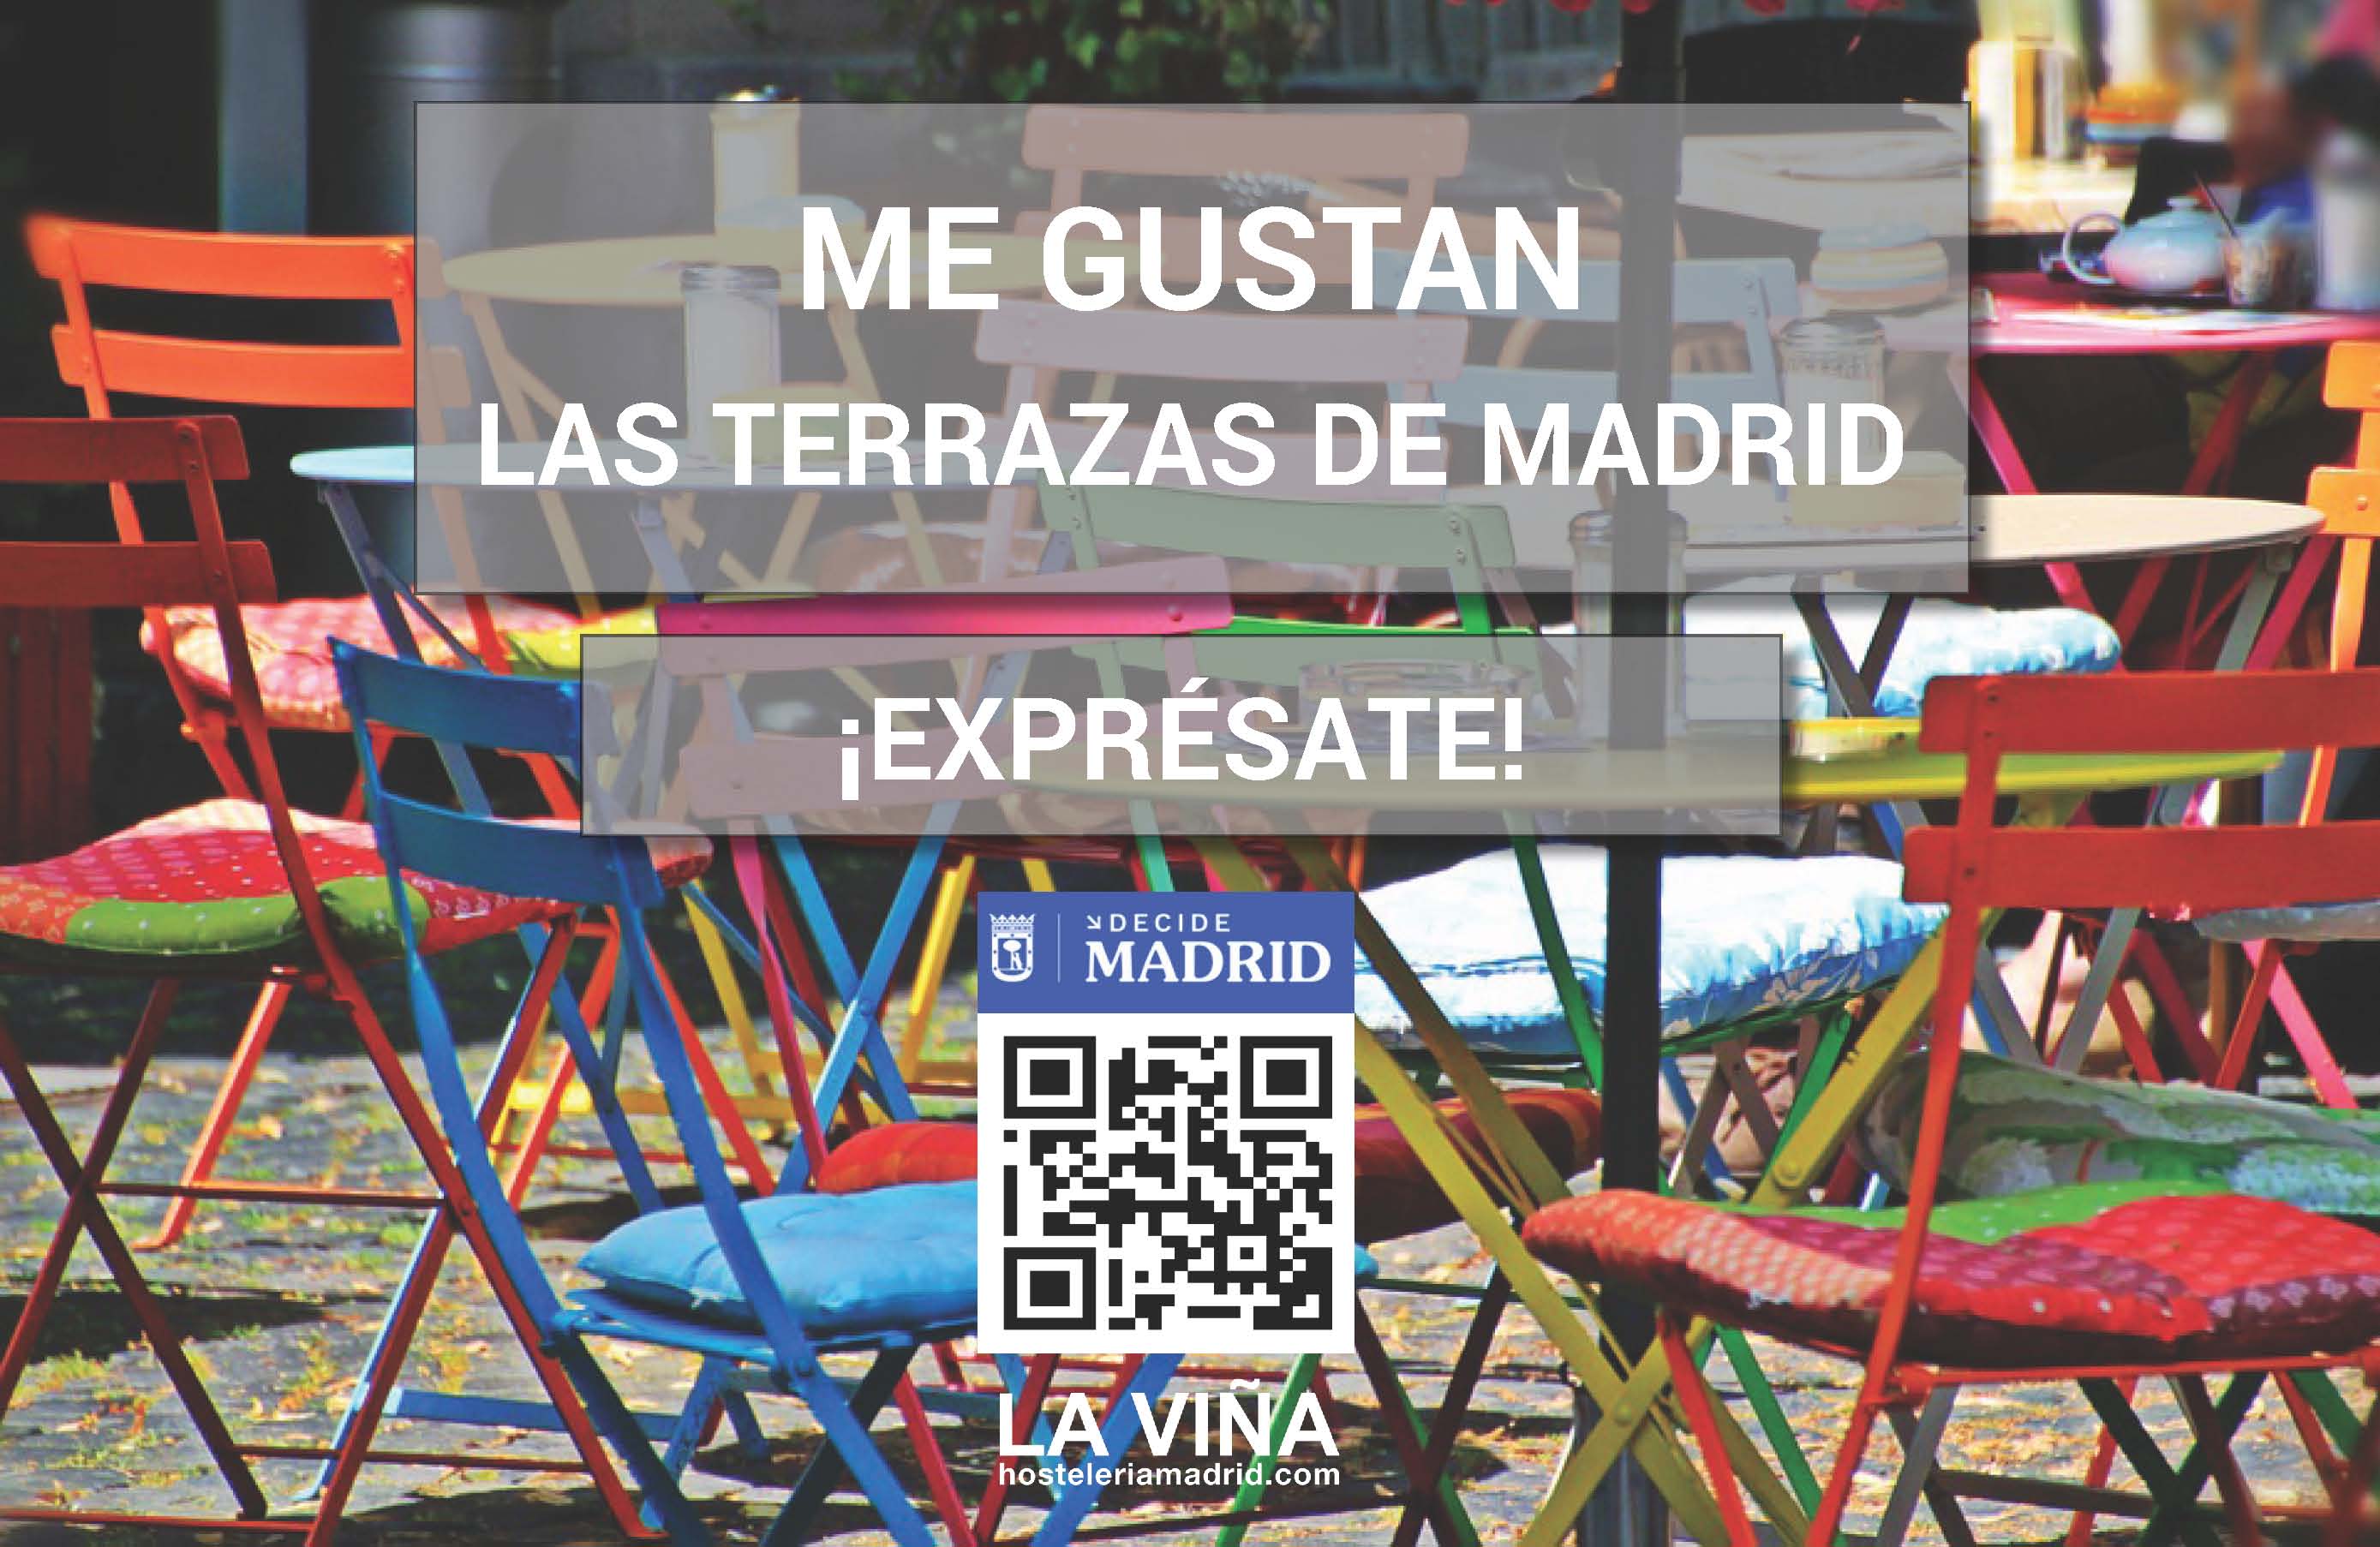 LA VIÑA inicia una campaña a favor de las terrazas en respuesta a la consulta pública del Ayto. de Madrid - La Viña